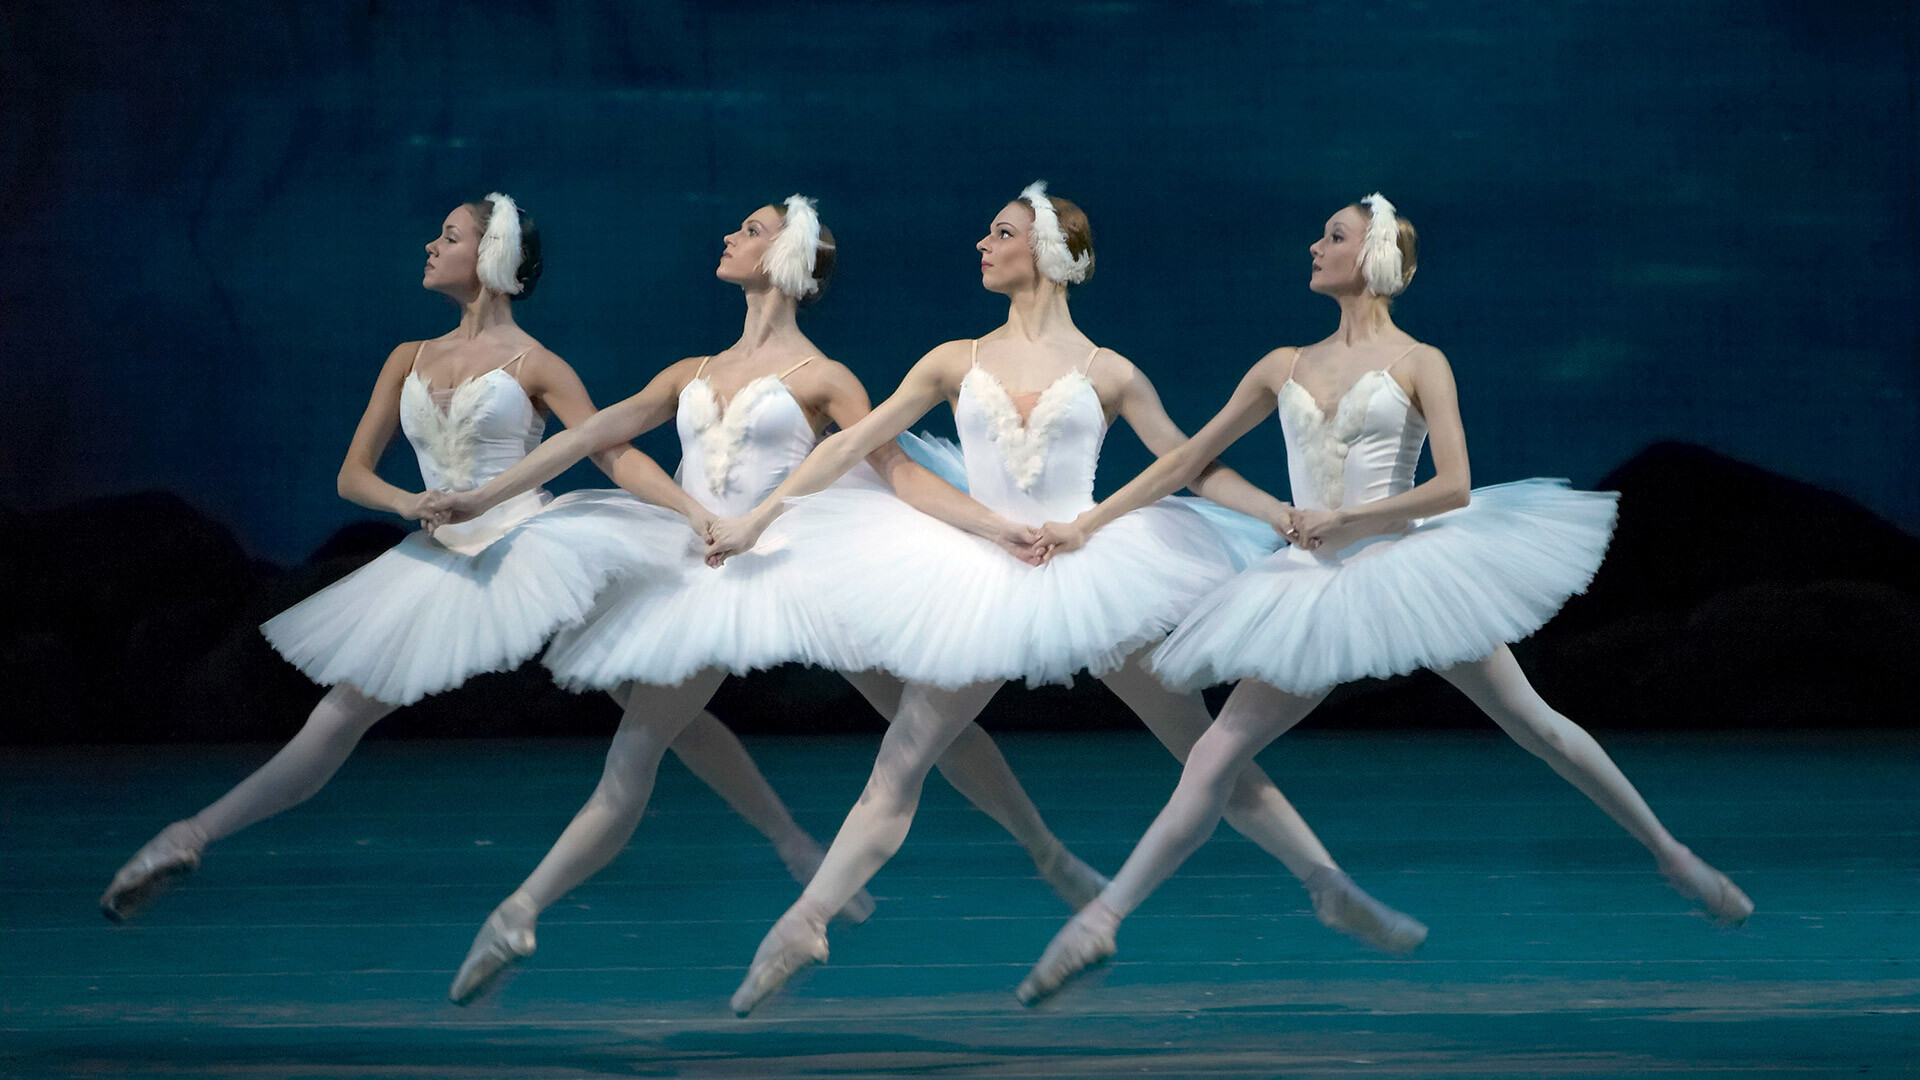 Mali labudovi u sceni iz baleta Petra Čajkovskog "Labuđe jezero" u koreografiji Mariusa Petipe. 
